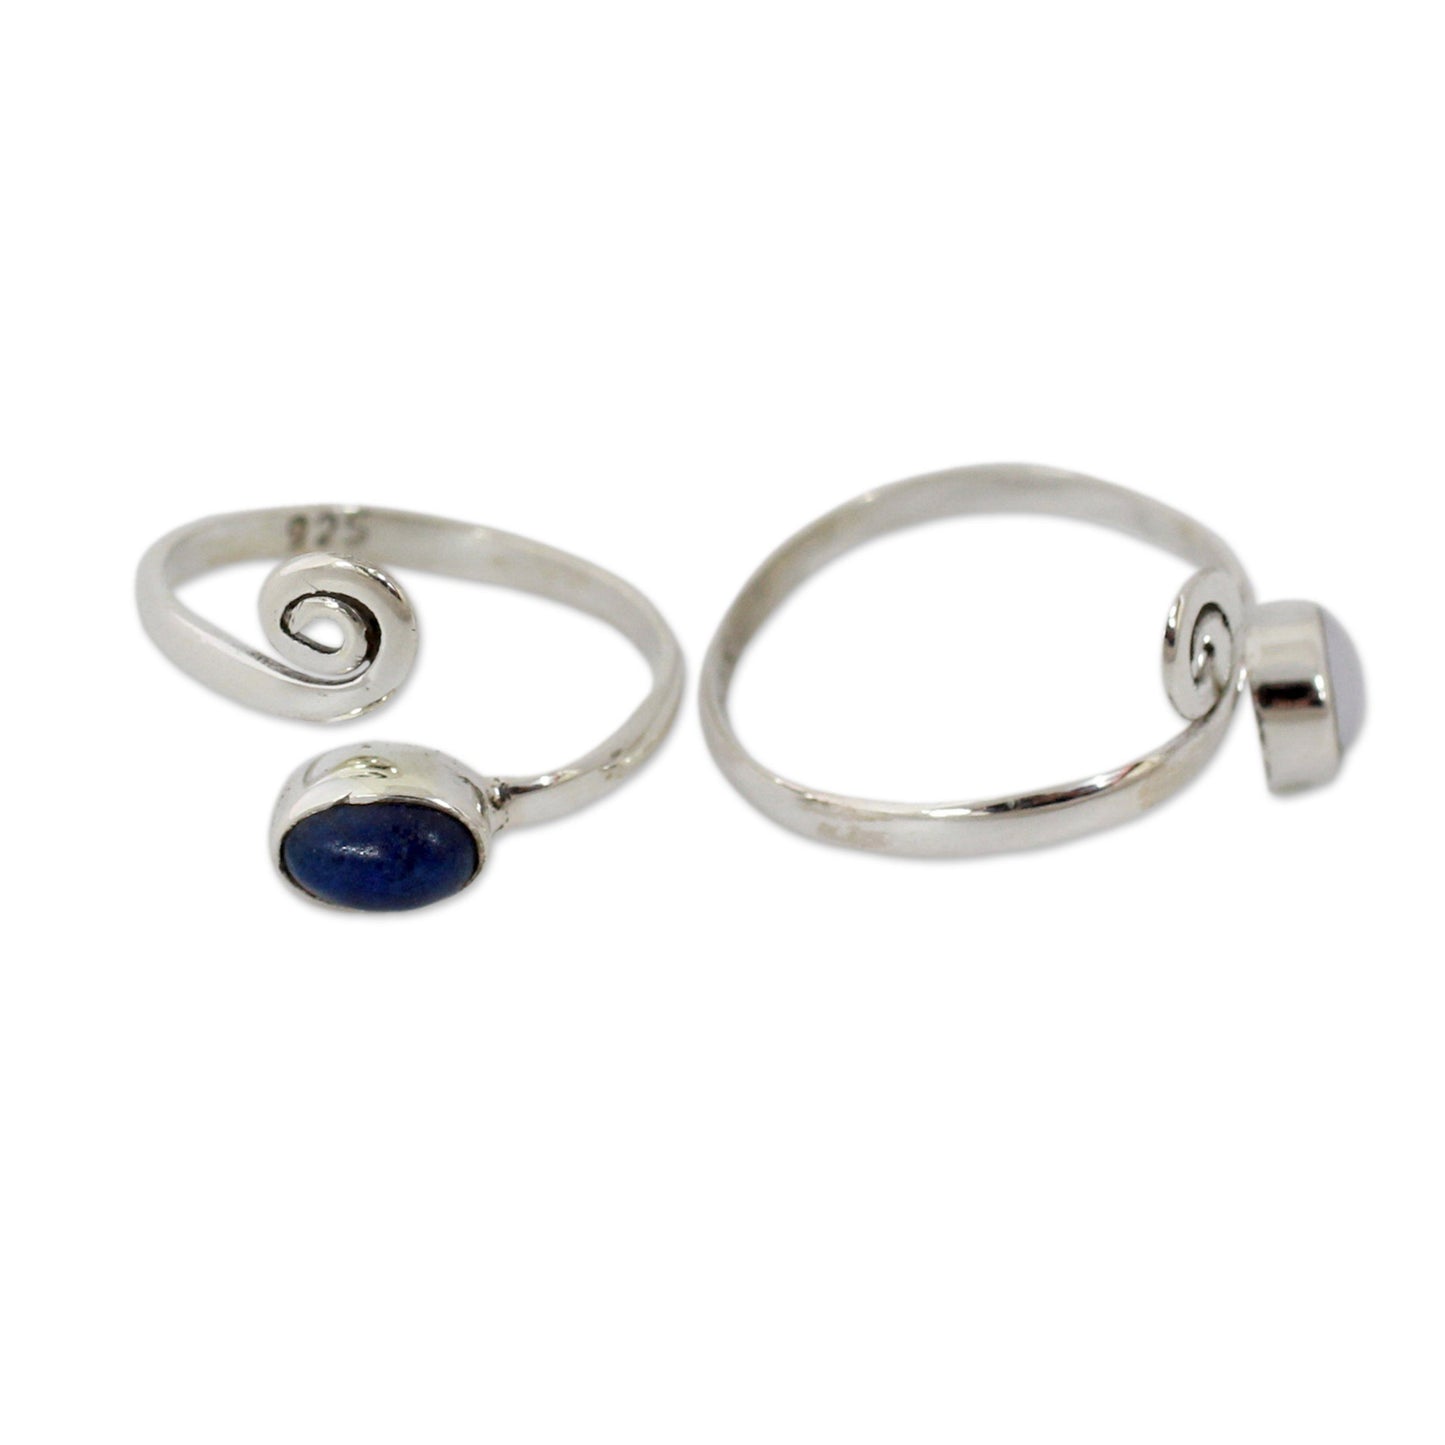 Pearl & Lapis Lazuli Toe Rings - Set of 2